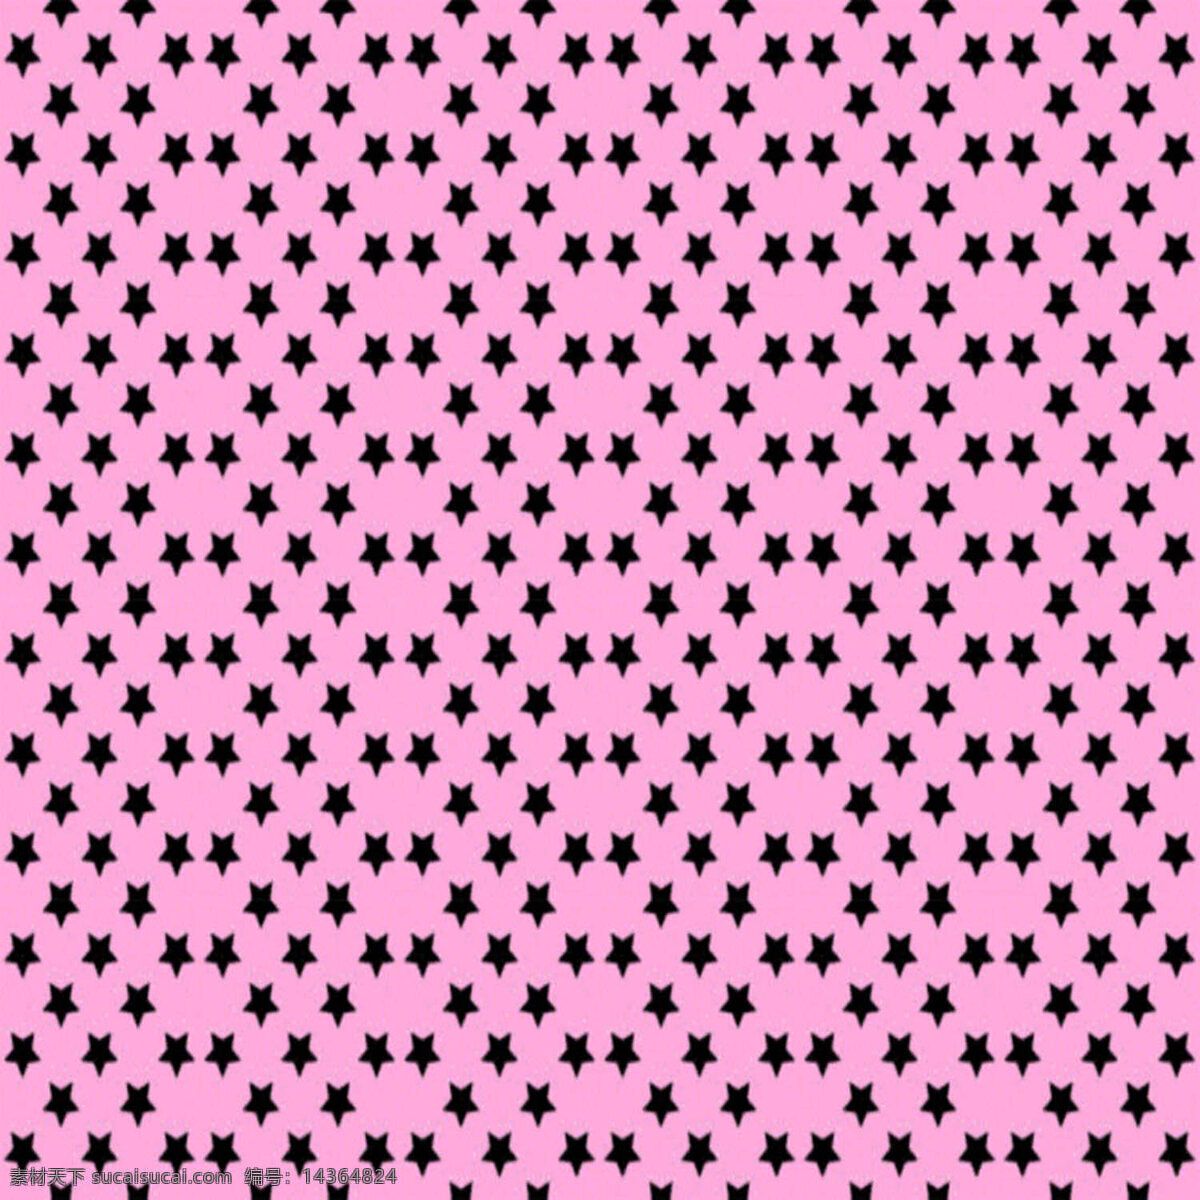 星星 纹路 背景 粉红 粉红底纹 底纹 设计素材 模板下载 背景图片